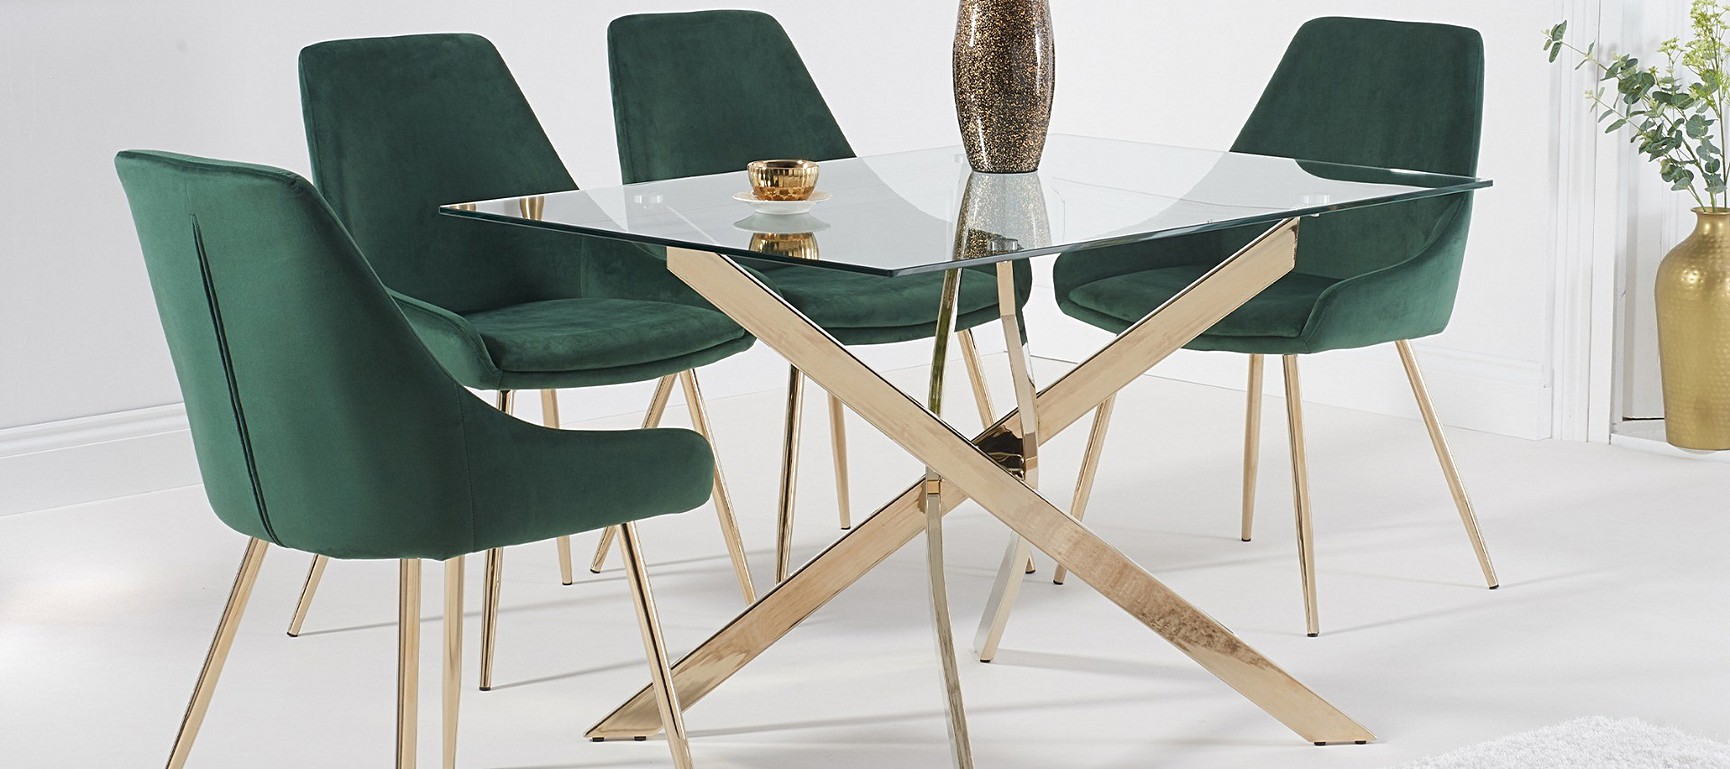 Velvet Green Chair Dining - Vida Living Hobbs Green Moss Wenge Leg